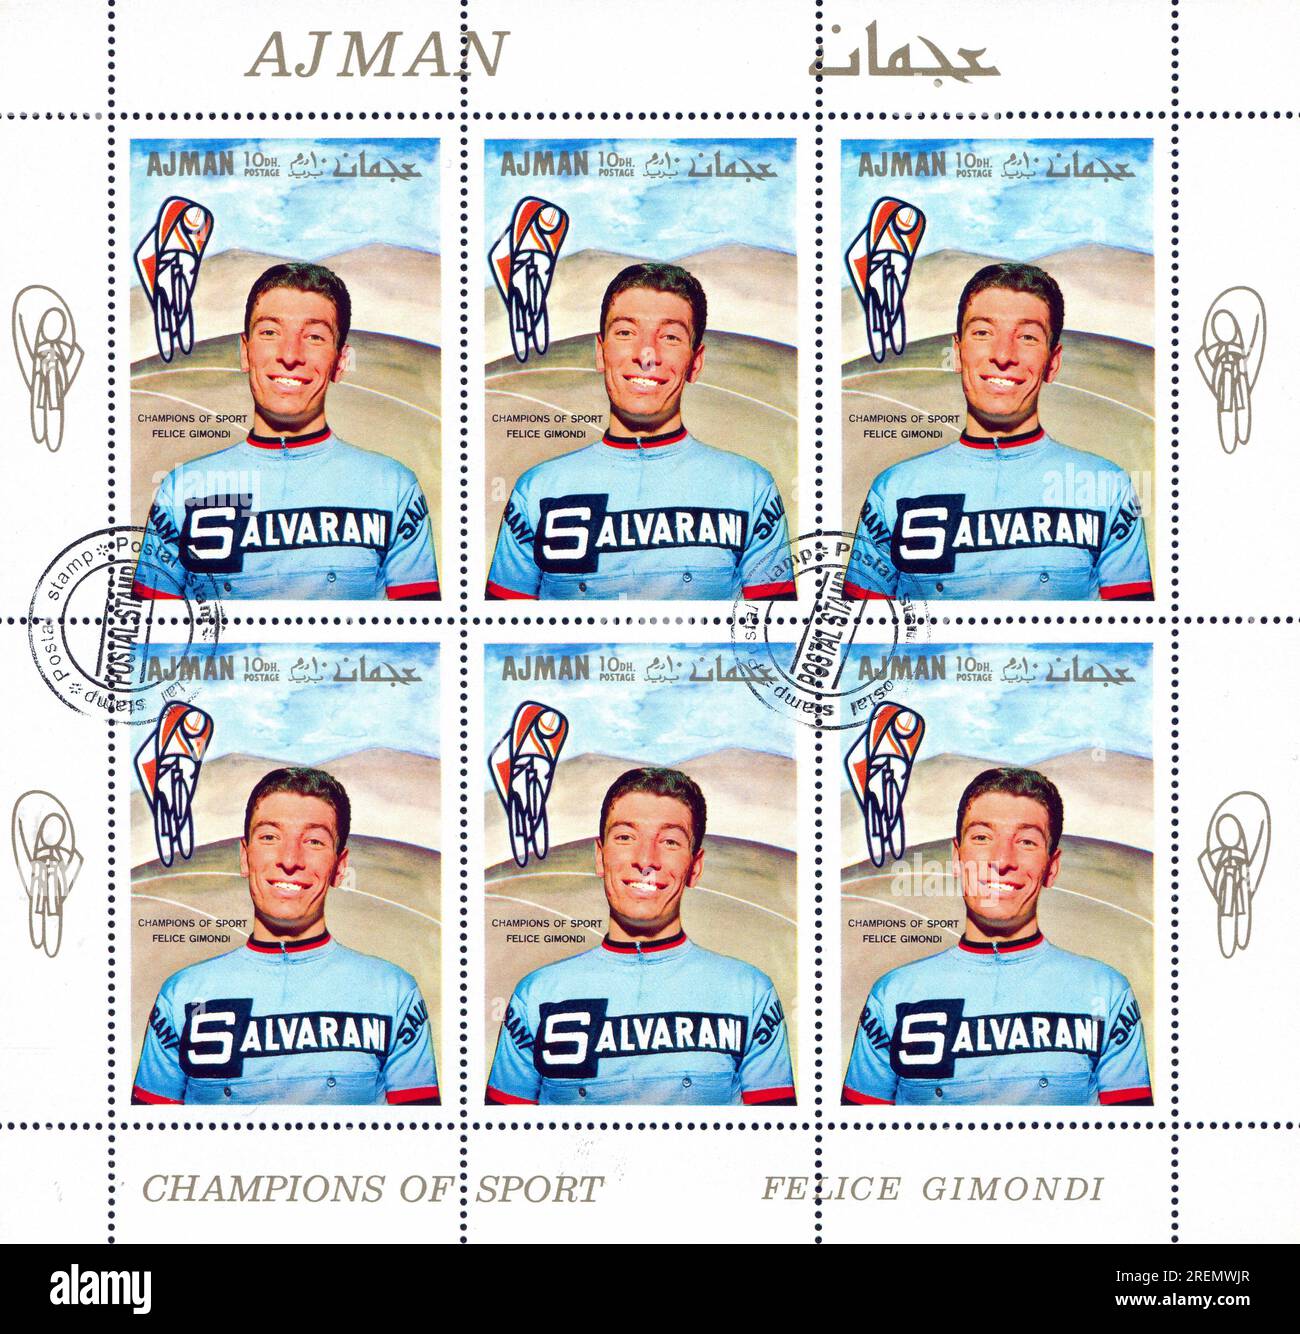 AJMAN - CIRCA 1969 : timbre imprimé par Ajman, montre Felice Gimondi, circa 1969 Banque D'Images